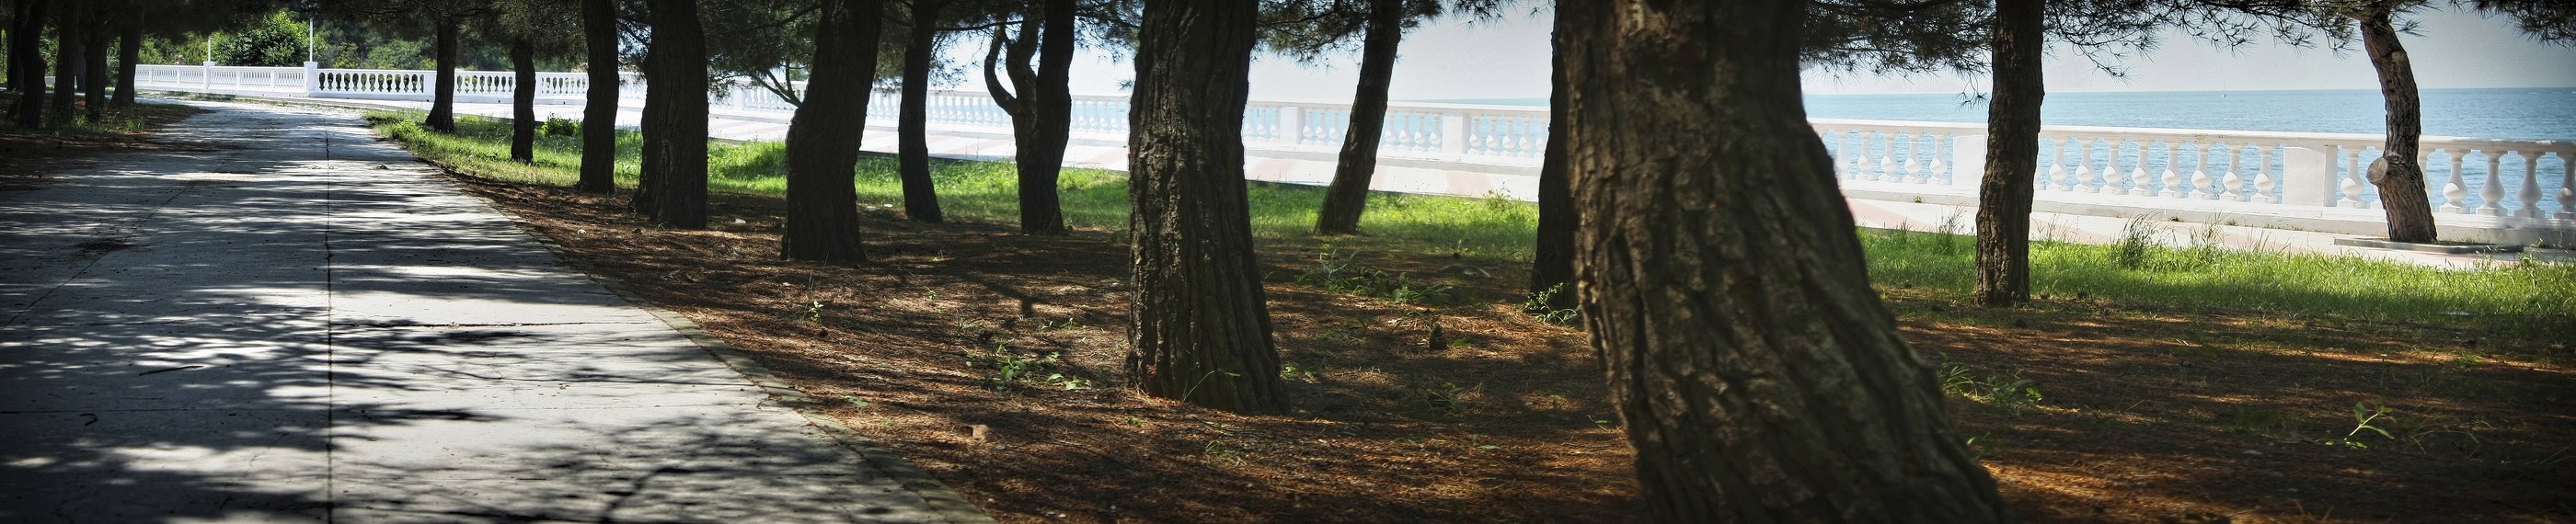 геленджик, набережная, дерево, деревья, лето, парк, Vladimir Kedrov